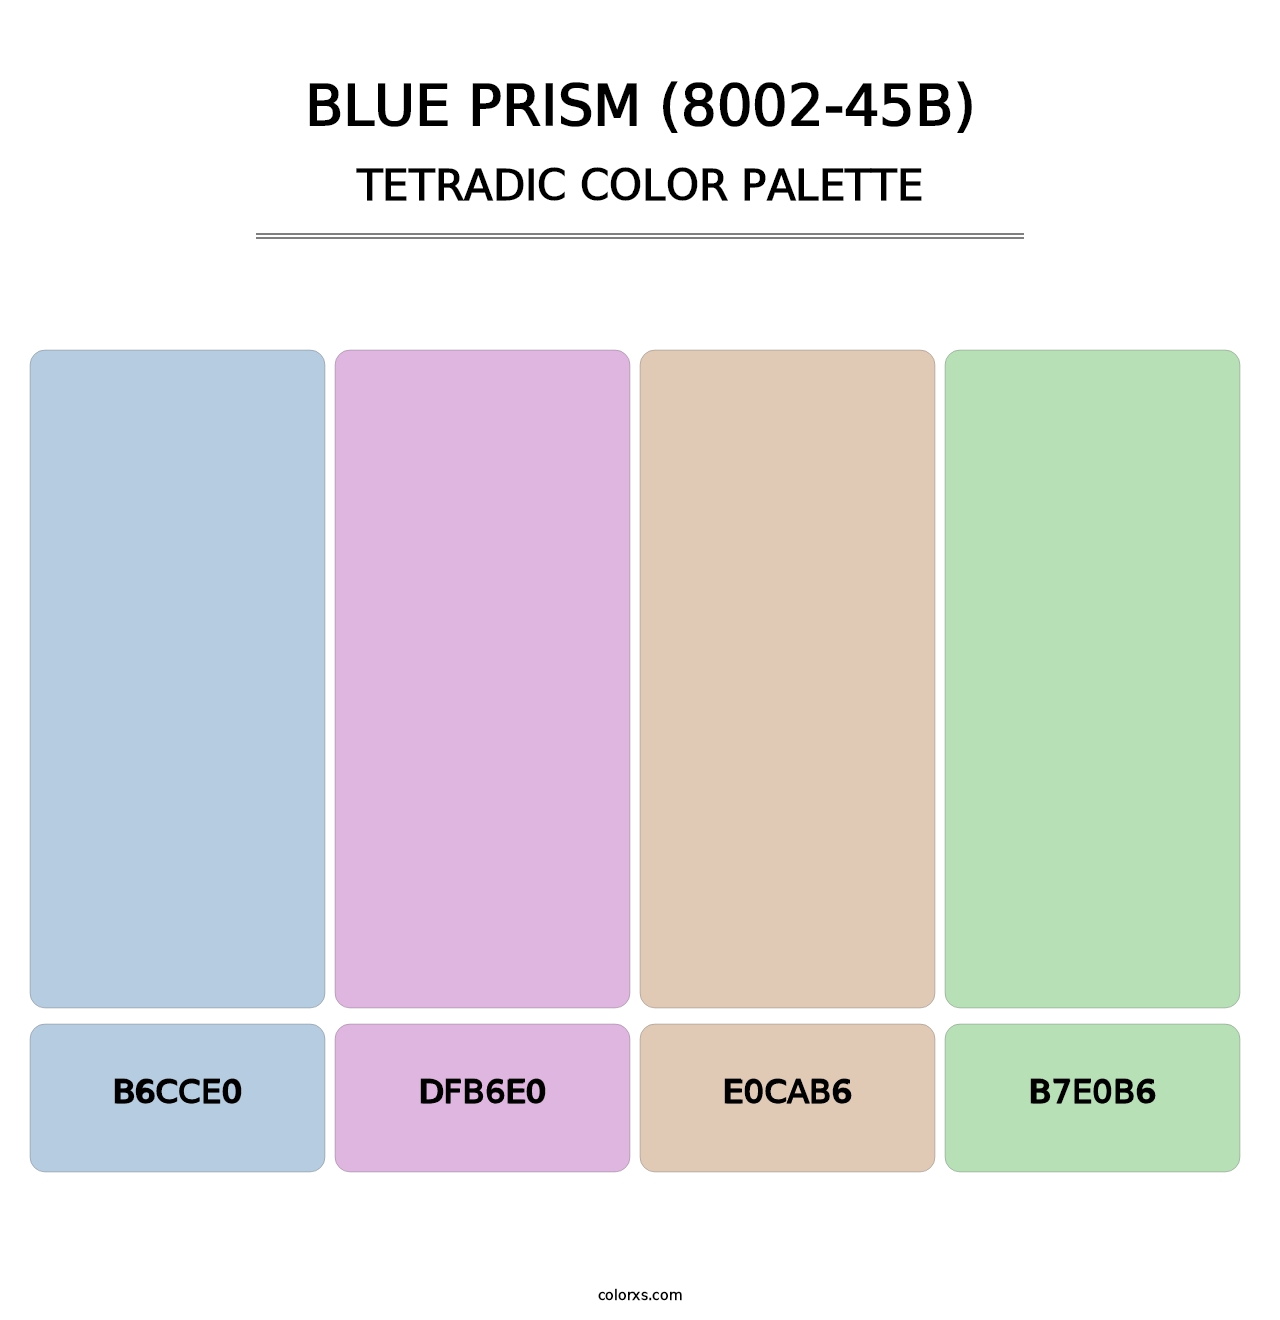 Blue Prism (8002-45B) - Tetradic Color Palette